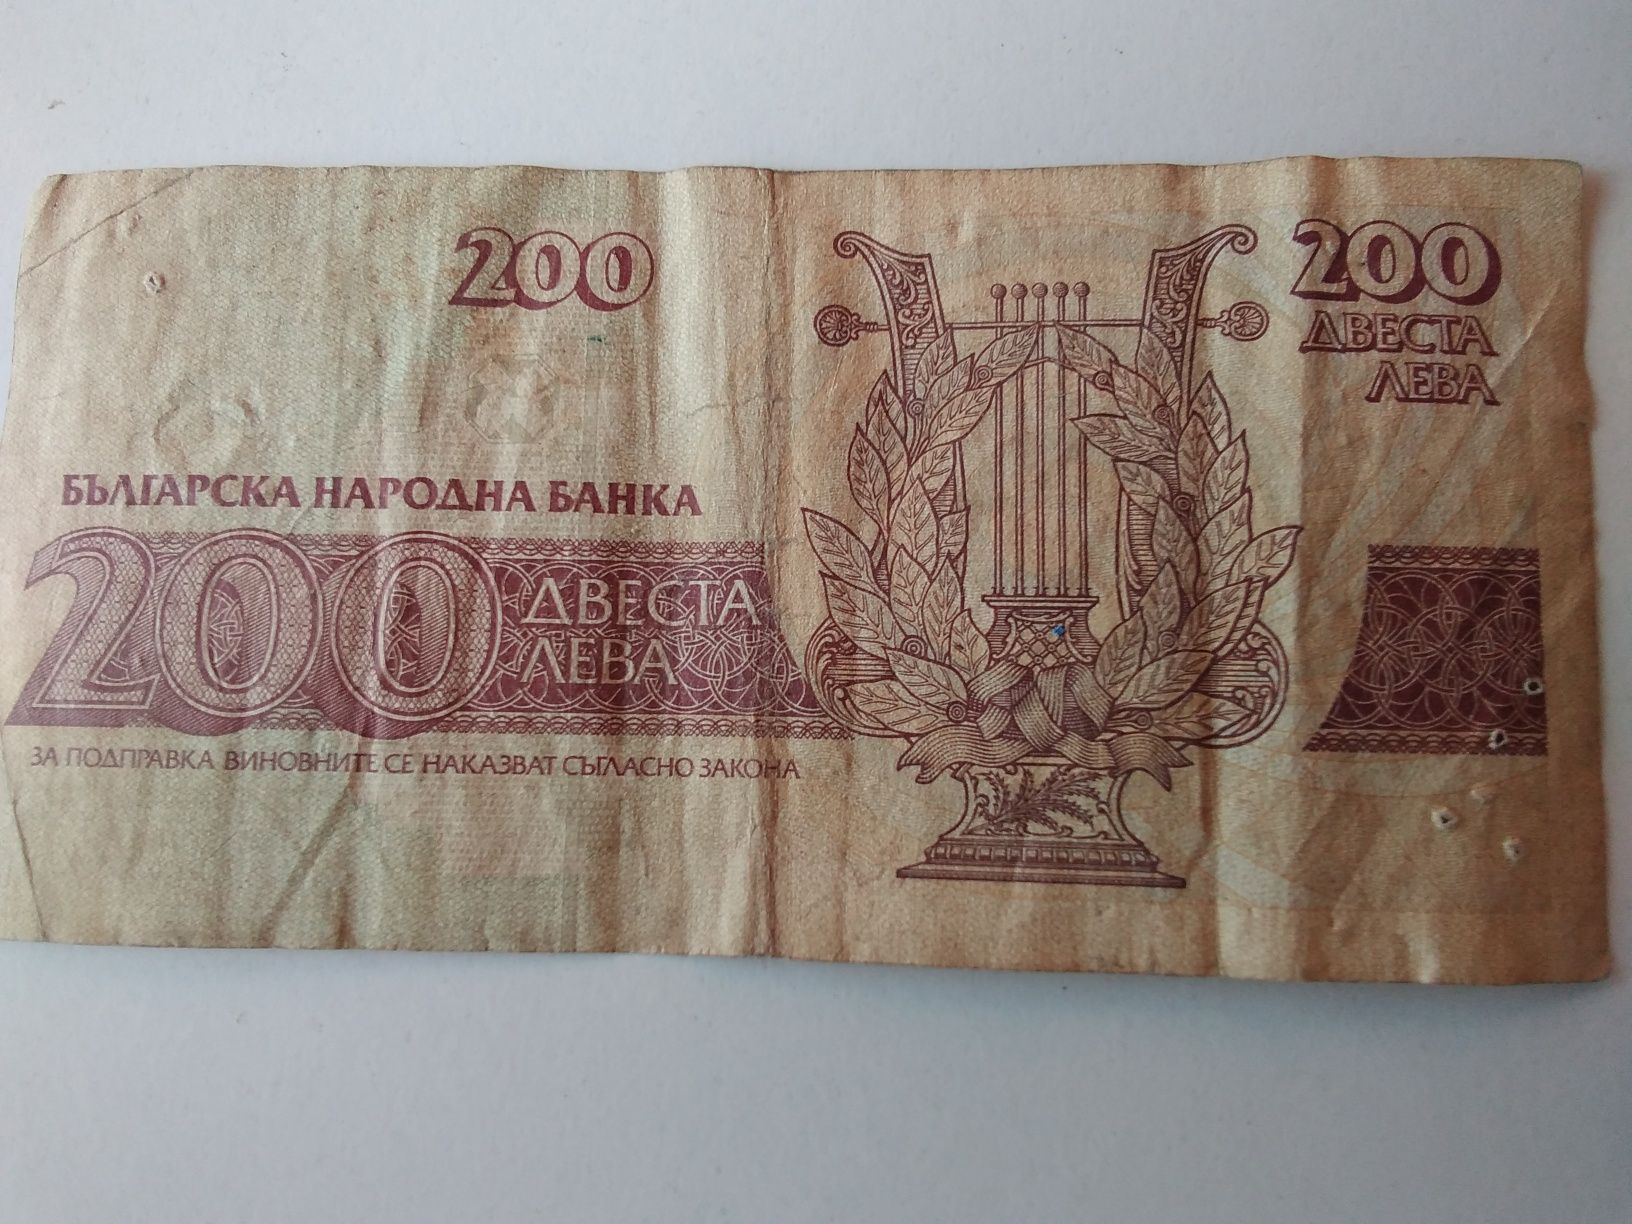 31 годишна и ценна банкнота от 1992 година с номинал 200 лева-Вазовка